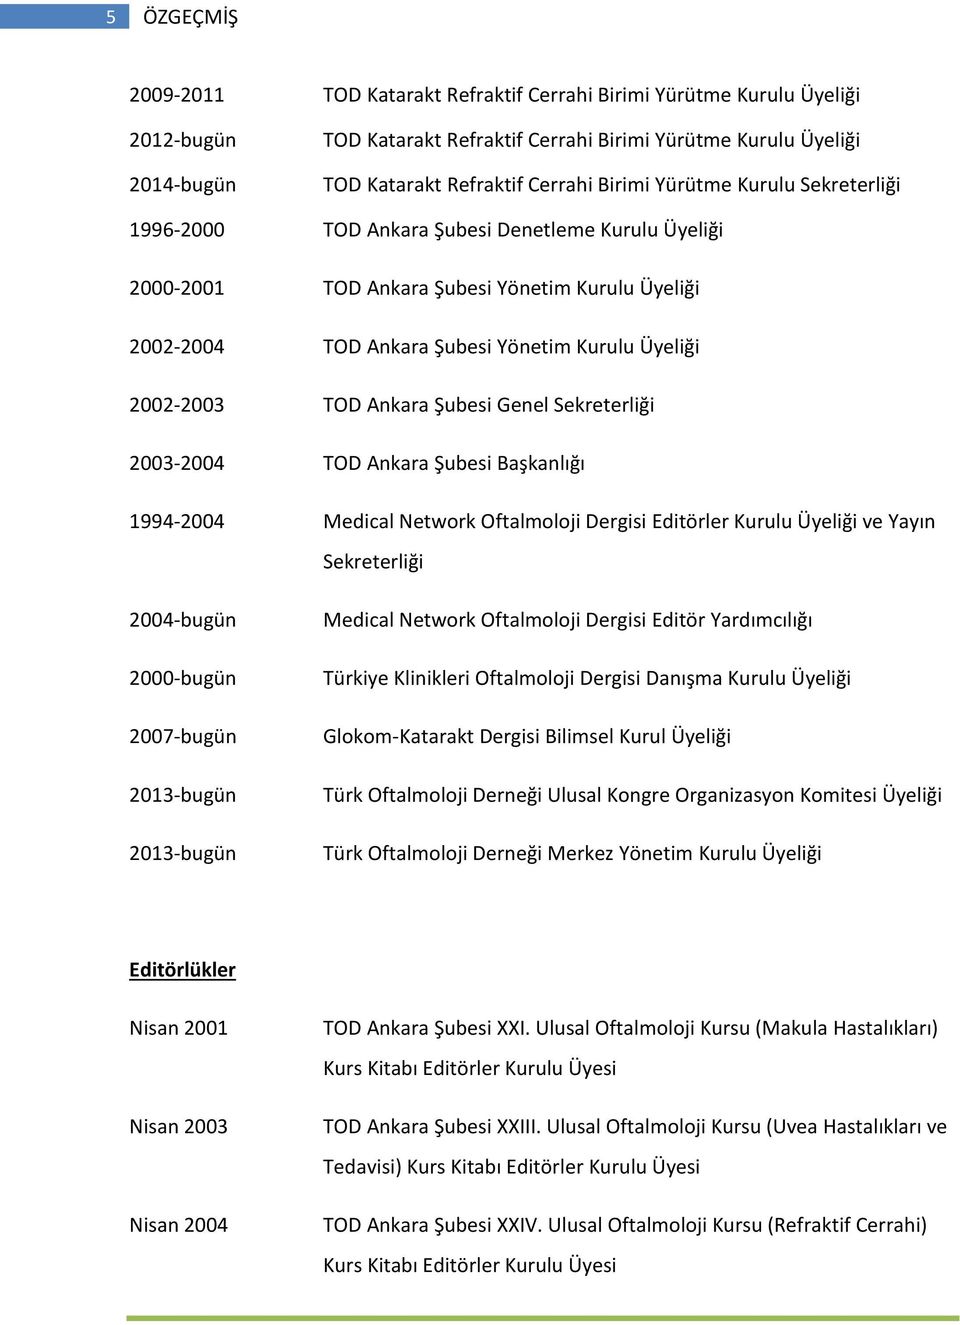 TOD Ankara Şubesi Genel Sekreterliği 2003-2004 TOD Ankara Şubesi Başkanlığı 1994-2004 Medical Network Oftalmoloji Dergisi Editörler Kurulu Üyeliği ve Yayın Sekreterliği 2004-bugün 2000-bugün